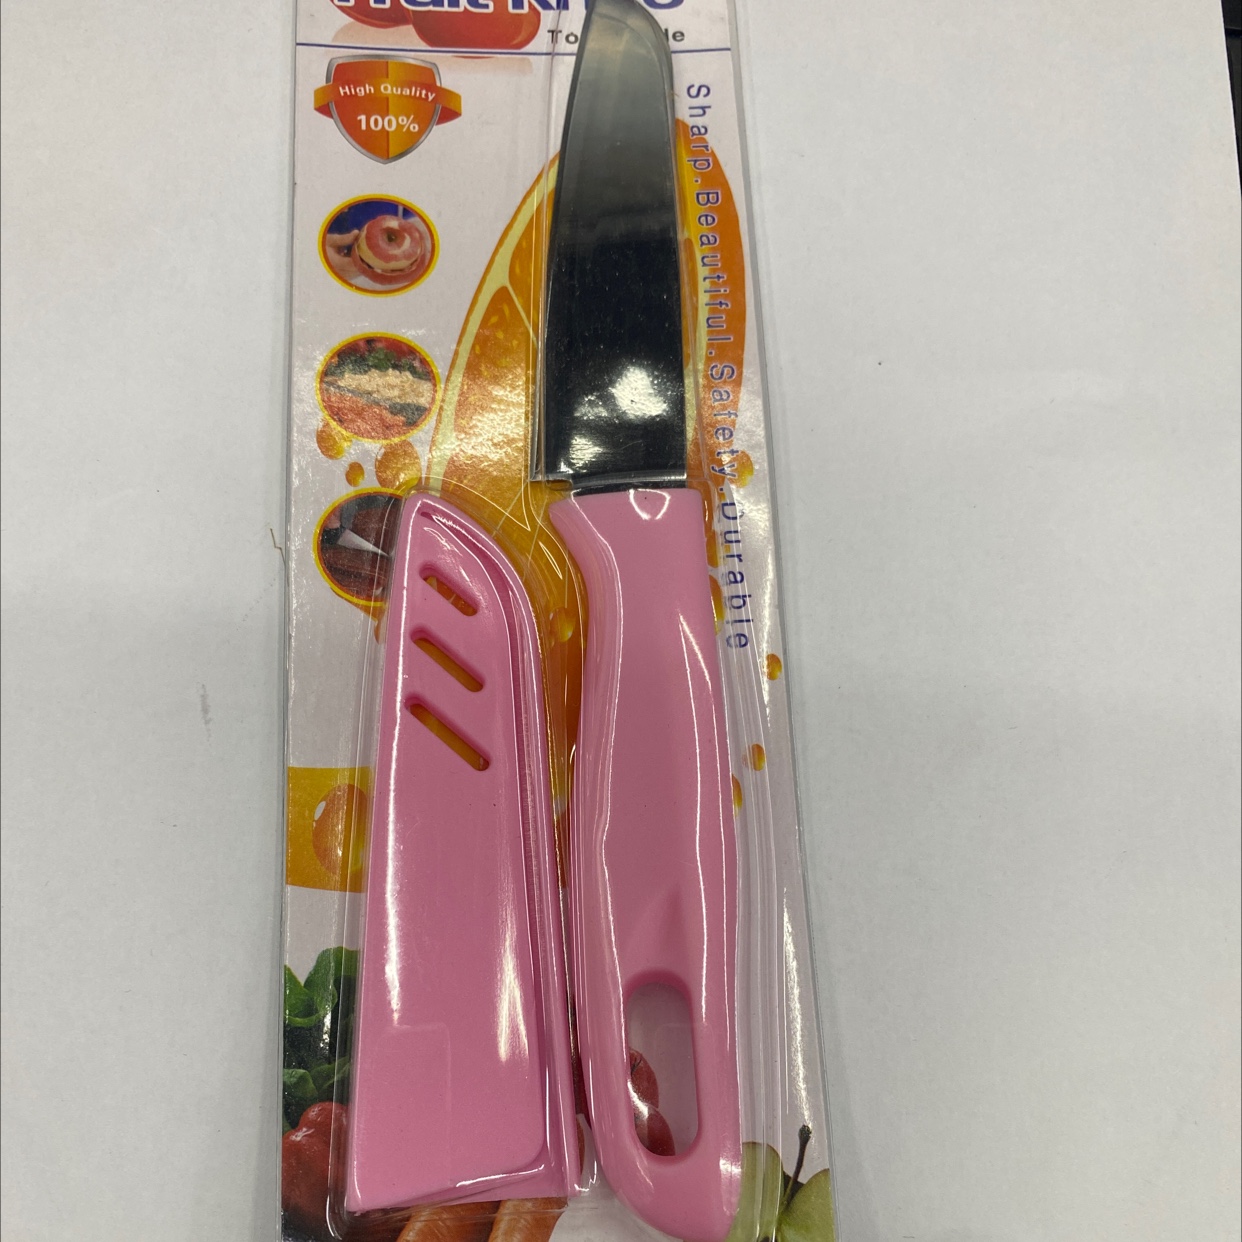 水果刀/削皮刀